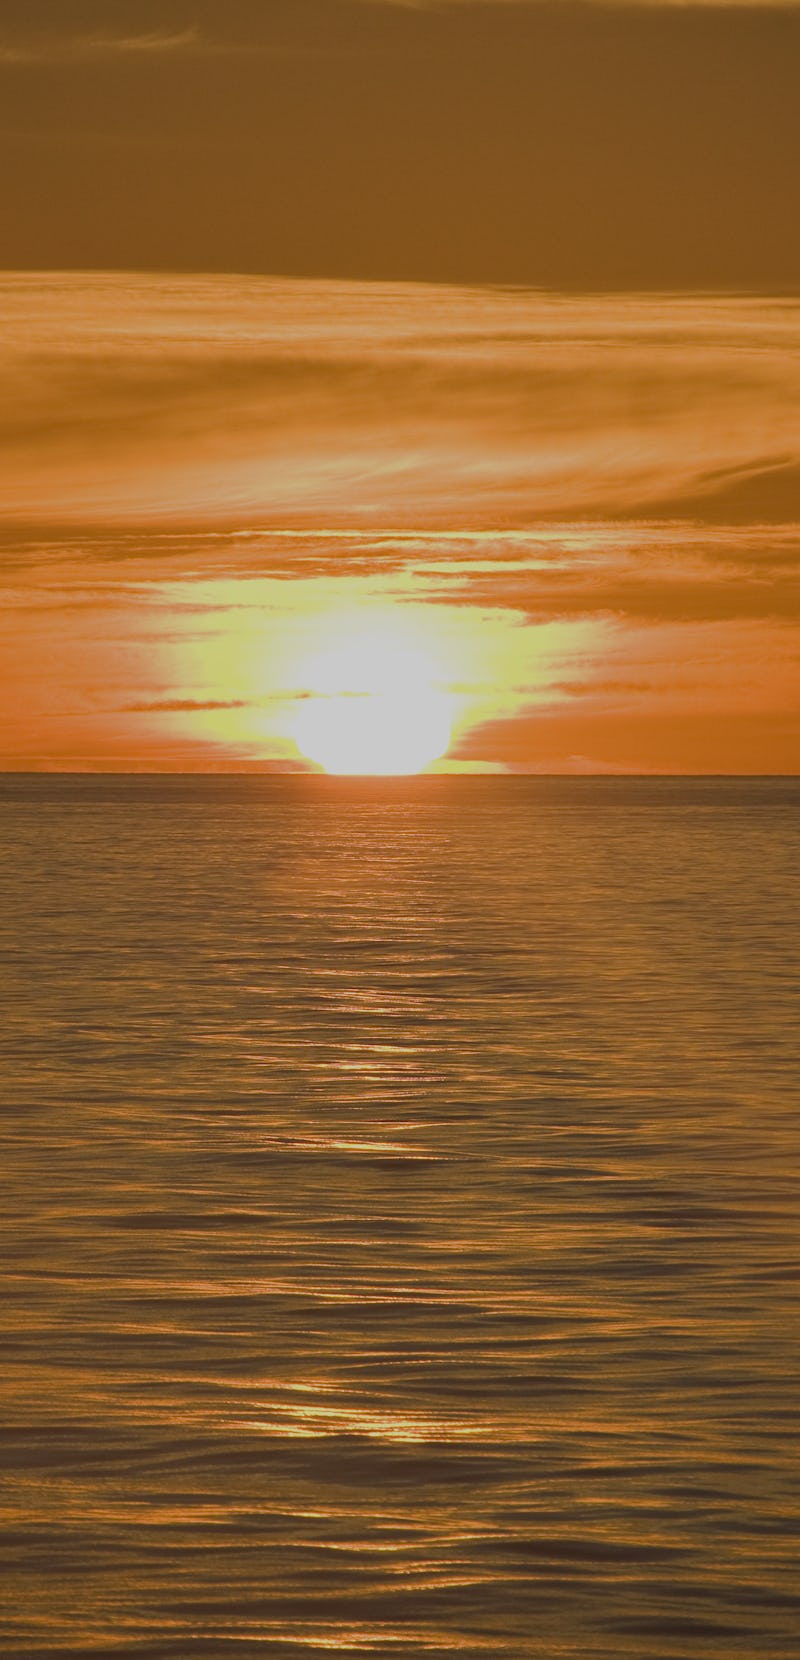 Sunrise, Gulf of California, Sea of Cortez, Mexico